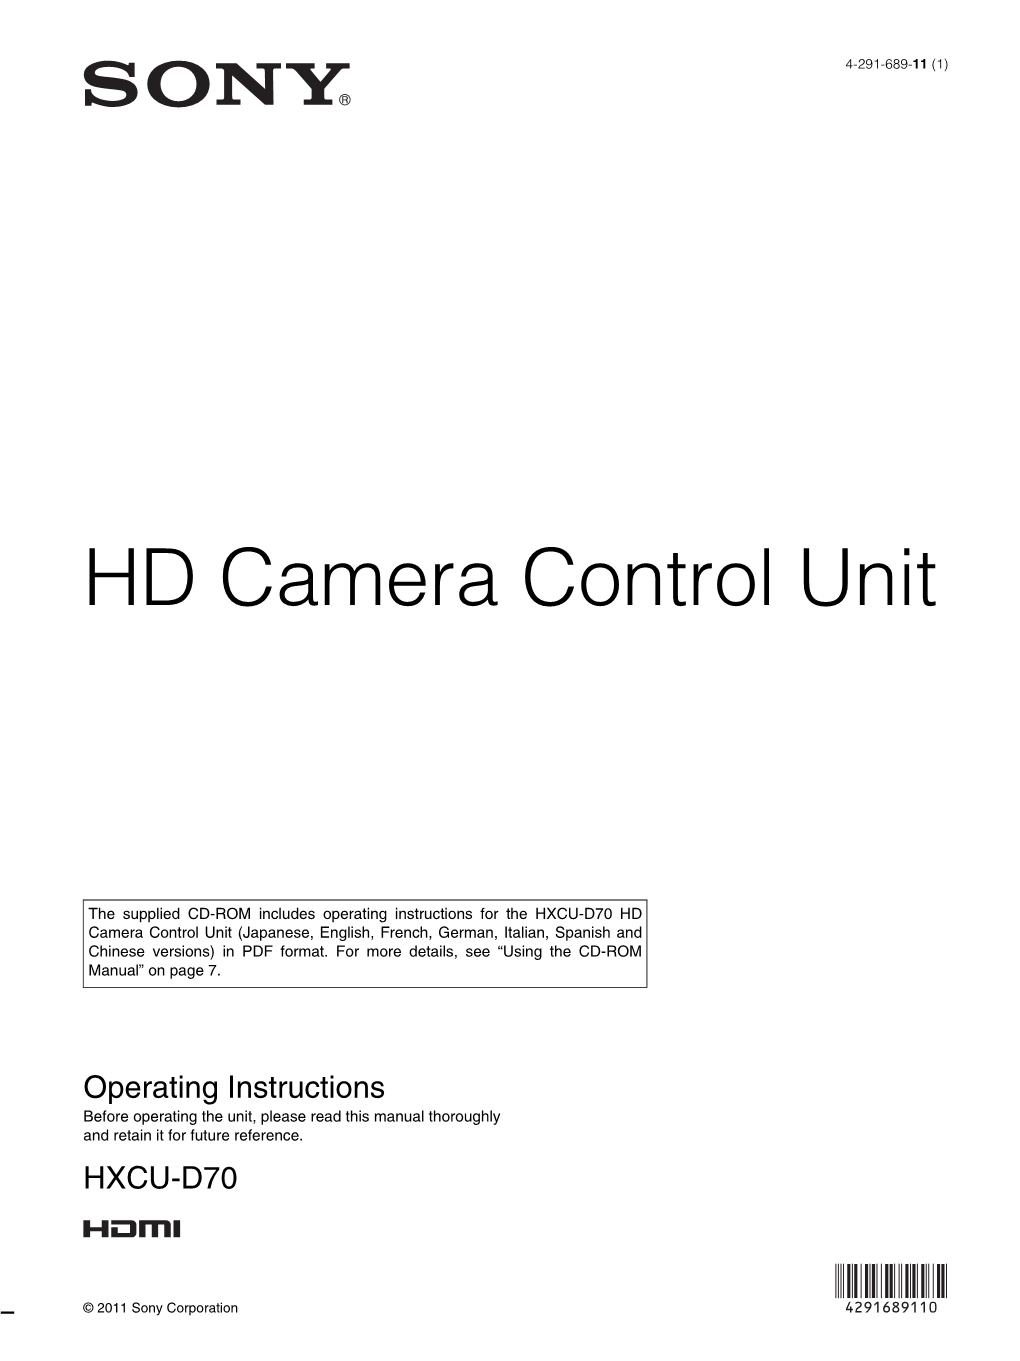 HD Camera Control Unit